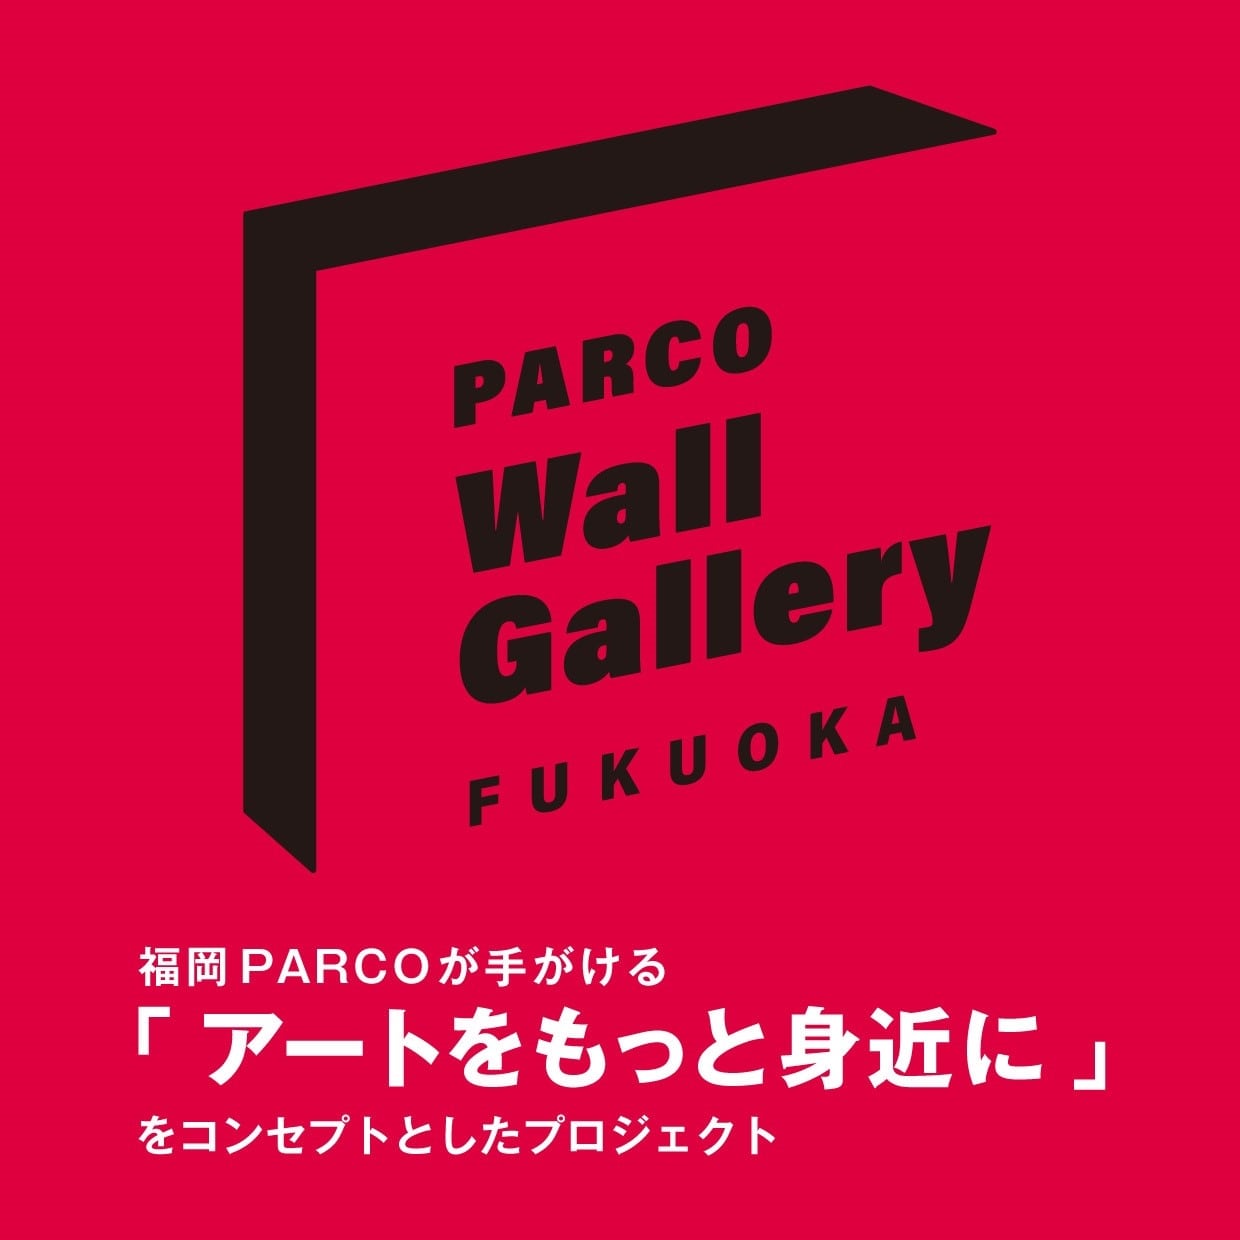 PARCO Wall Gallery FUKUOKA